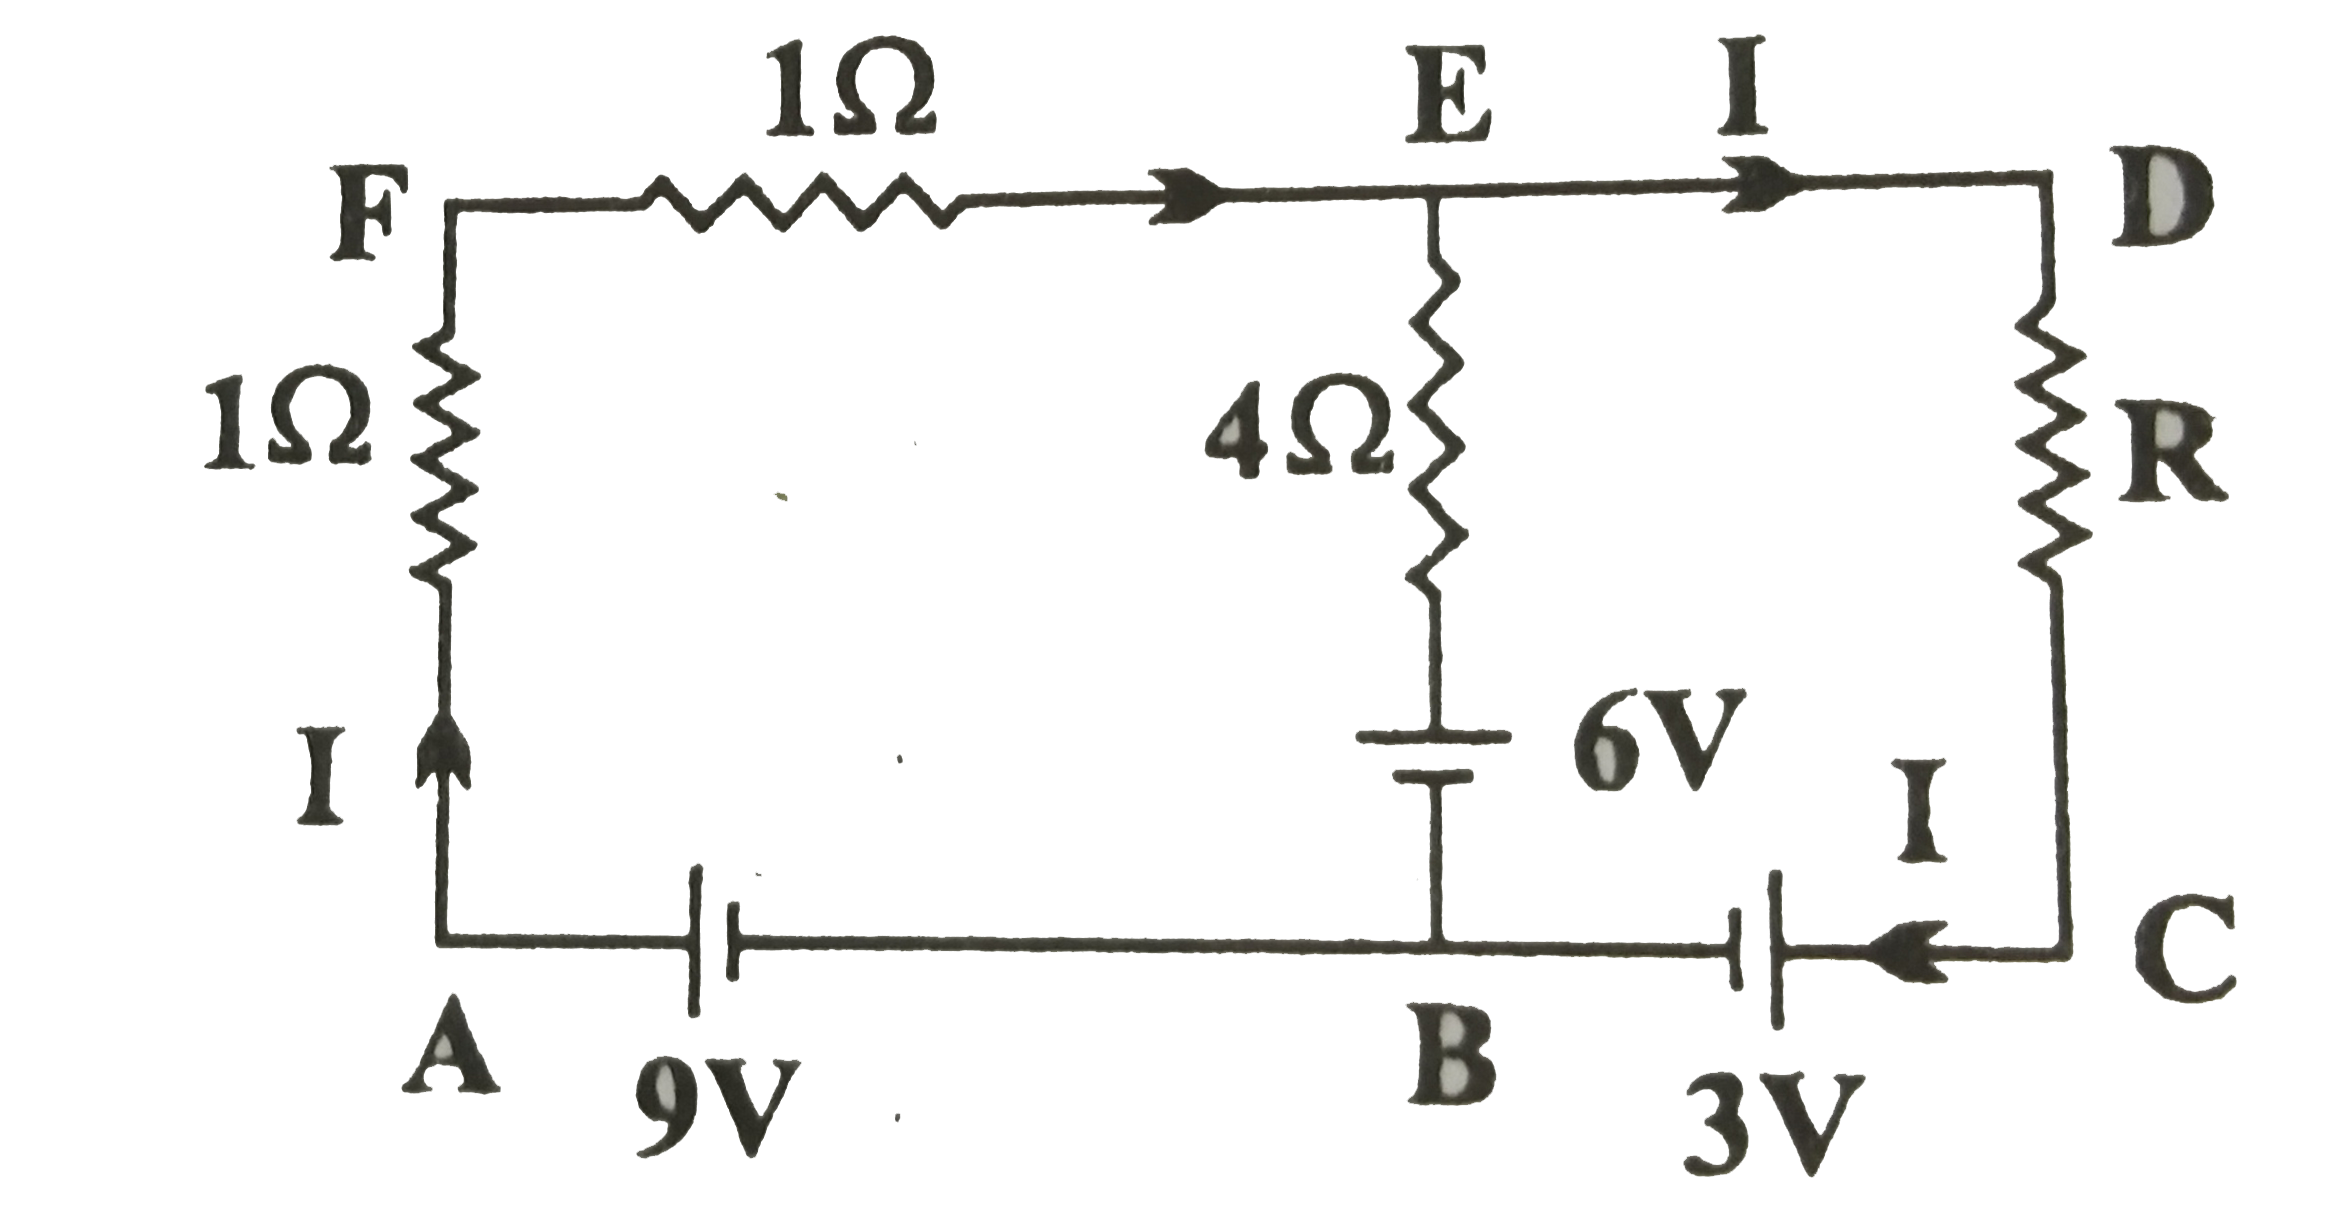 A और D के बीच विभवांतर ज्ञात करने के लिए किरचॉफ के नियमो का उपयोग कीजिए। चित्र में दिखलाए अनुसार विद्युत परिपथ में भुजा BE में कोई धारा प्रवाहित नहीं होती।